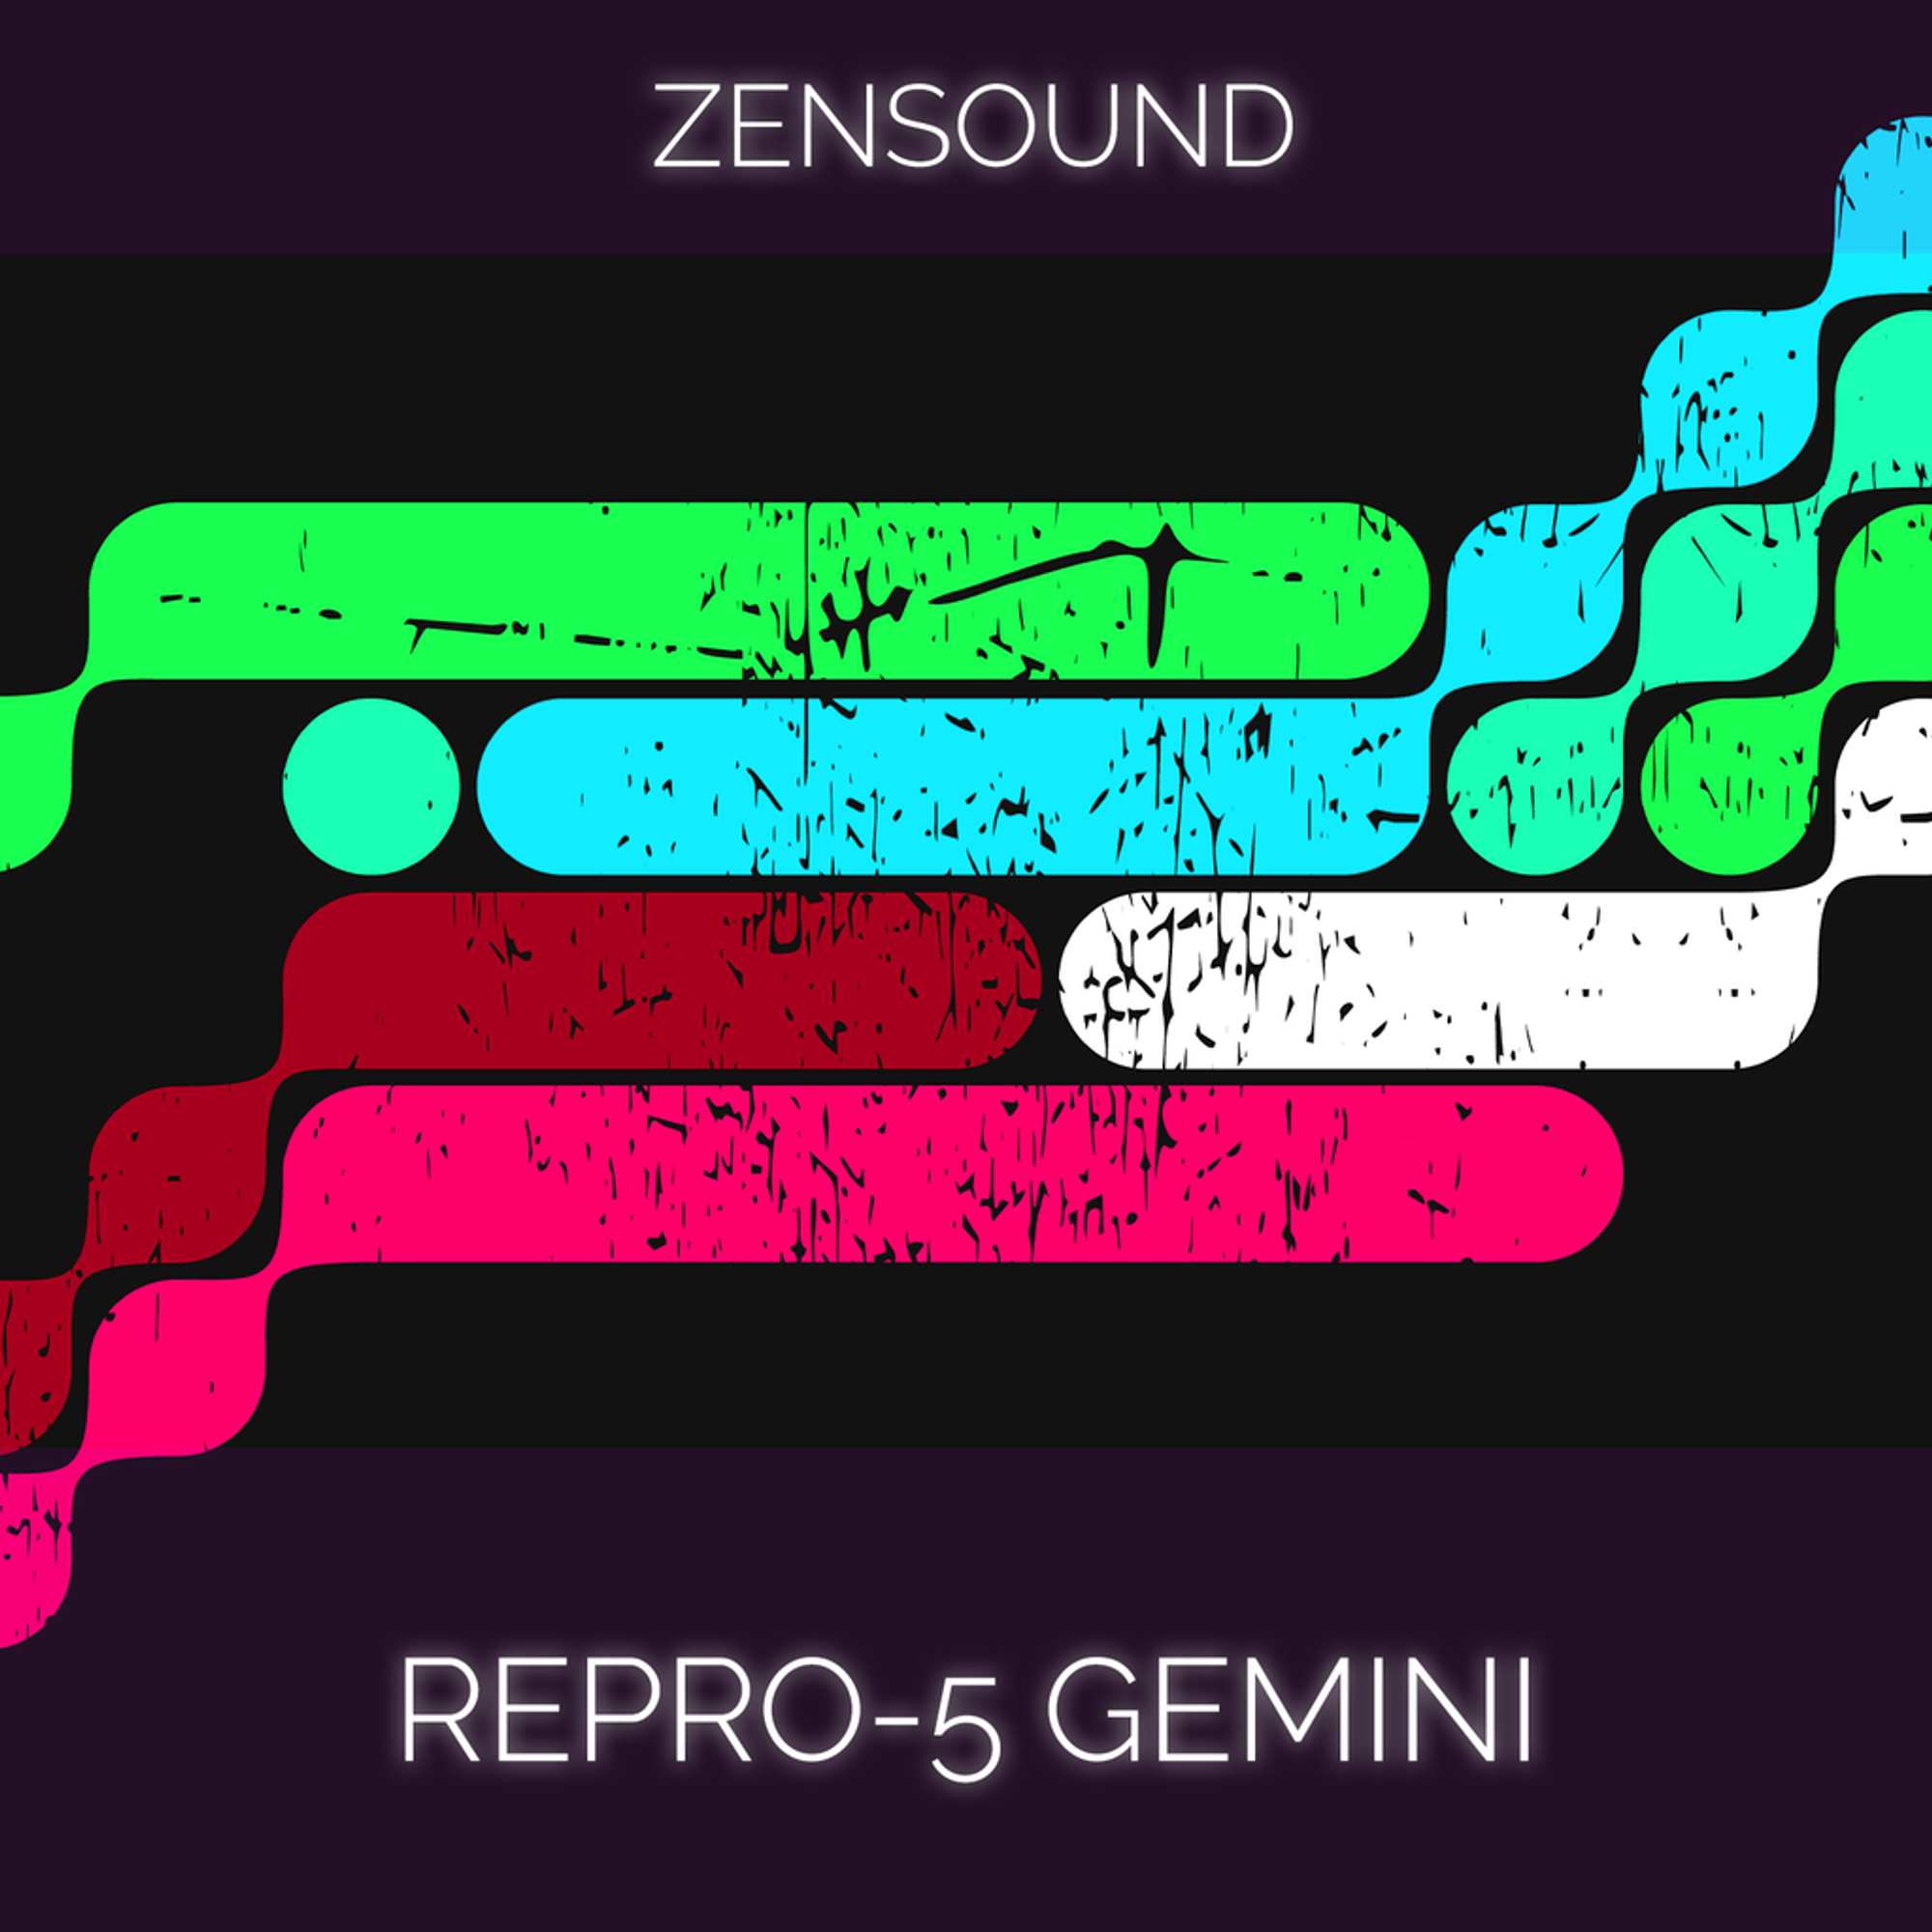 Repro-5 Gemini